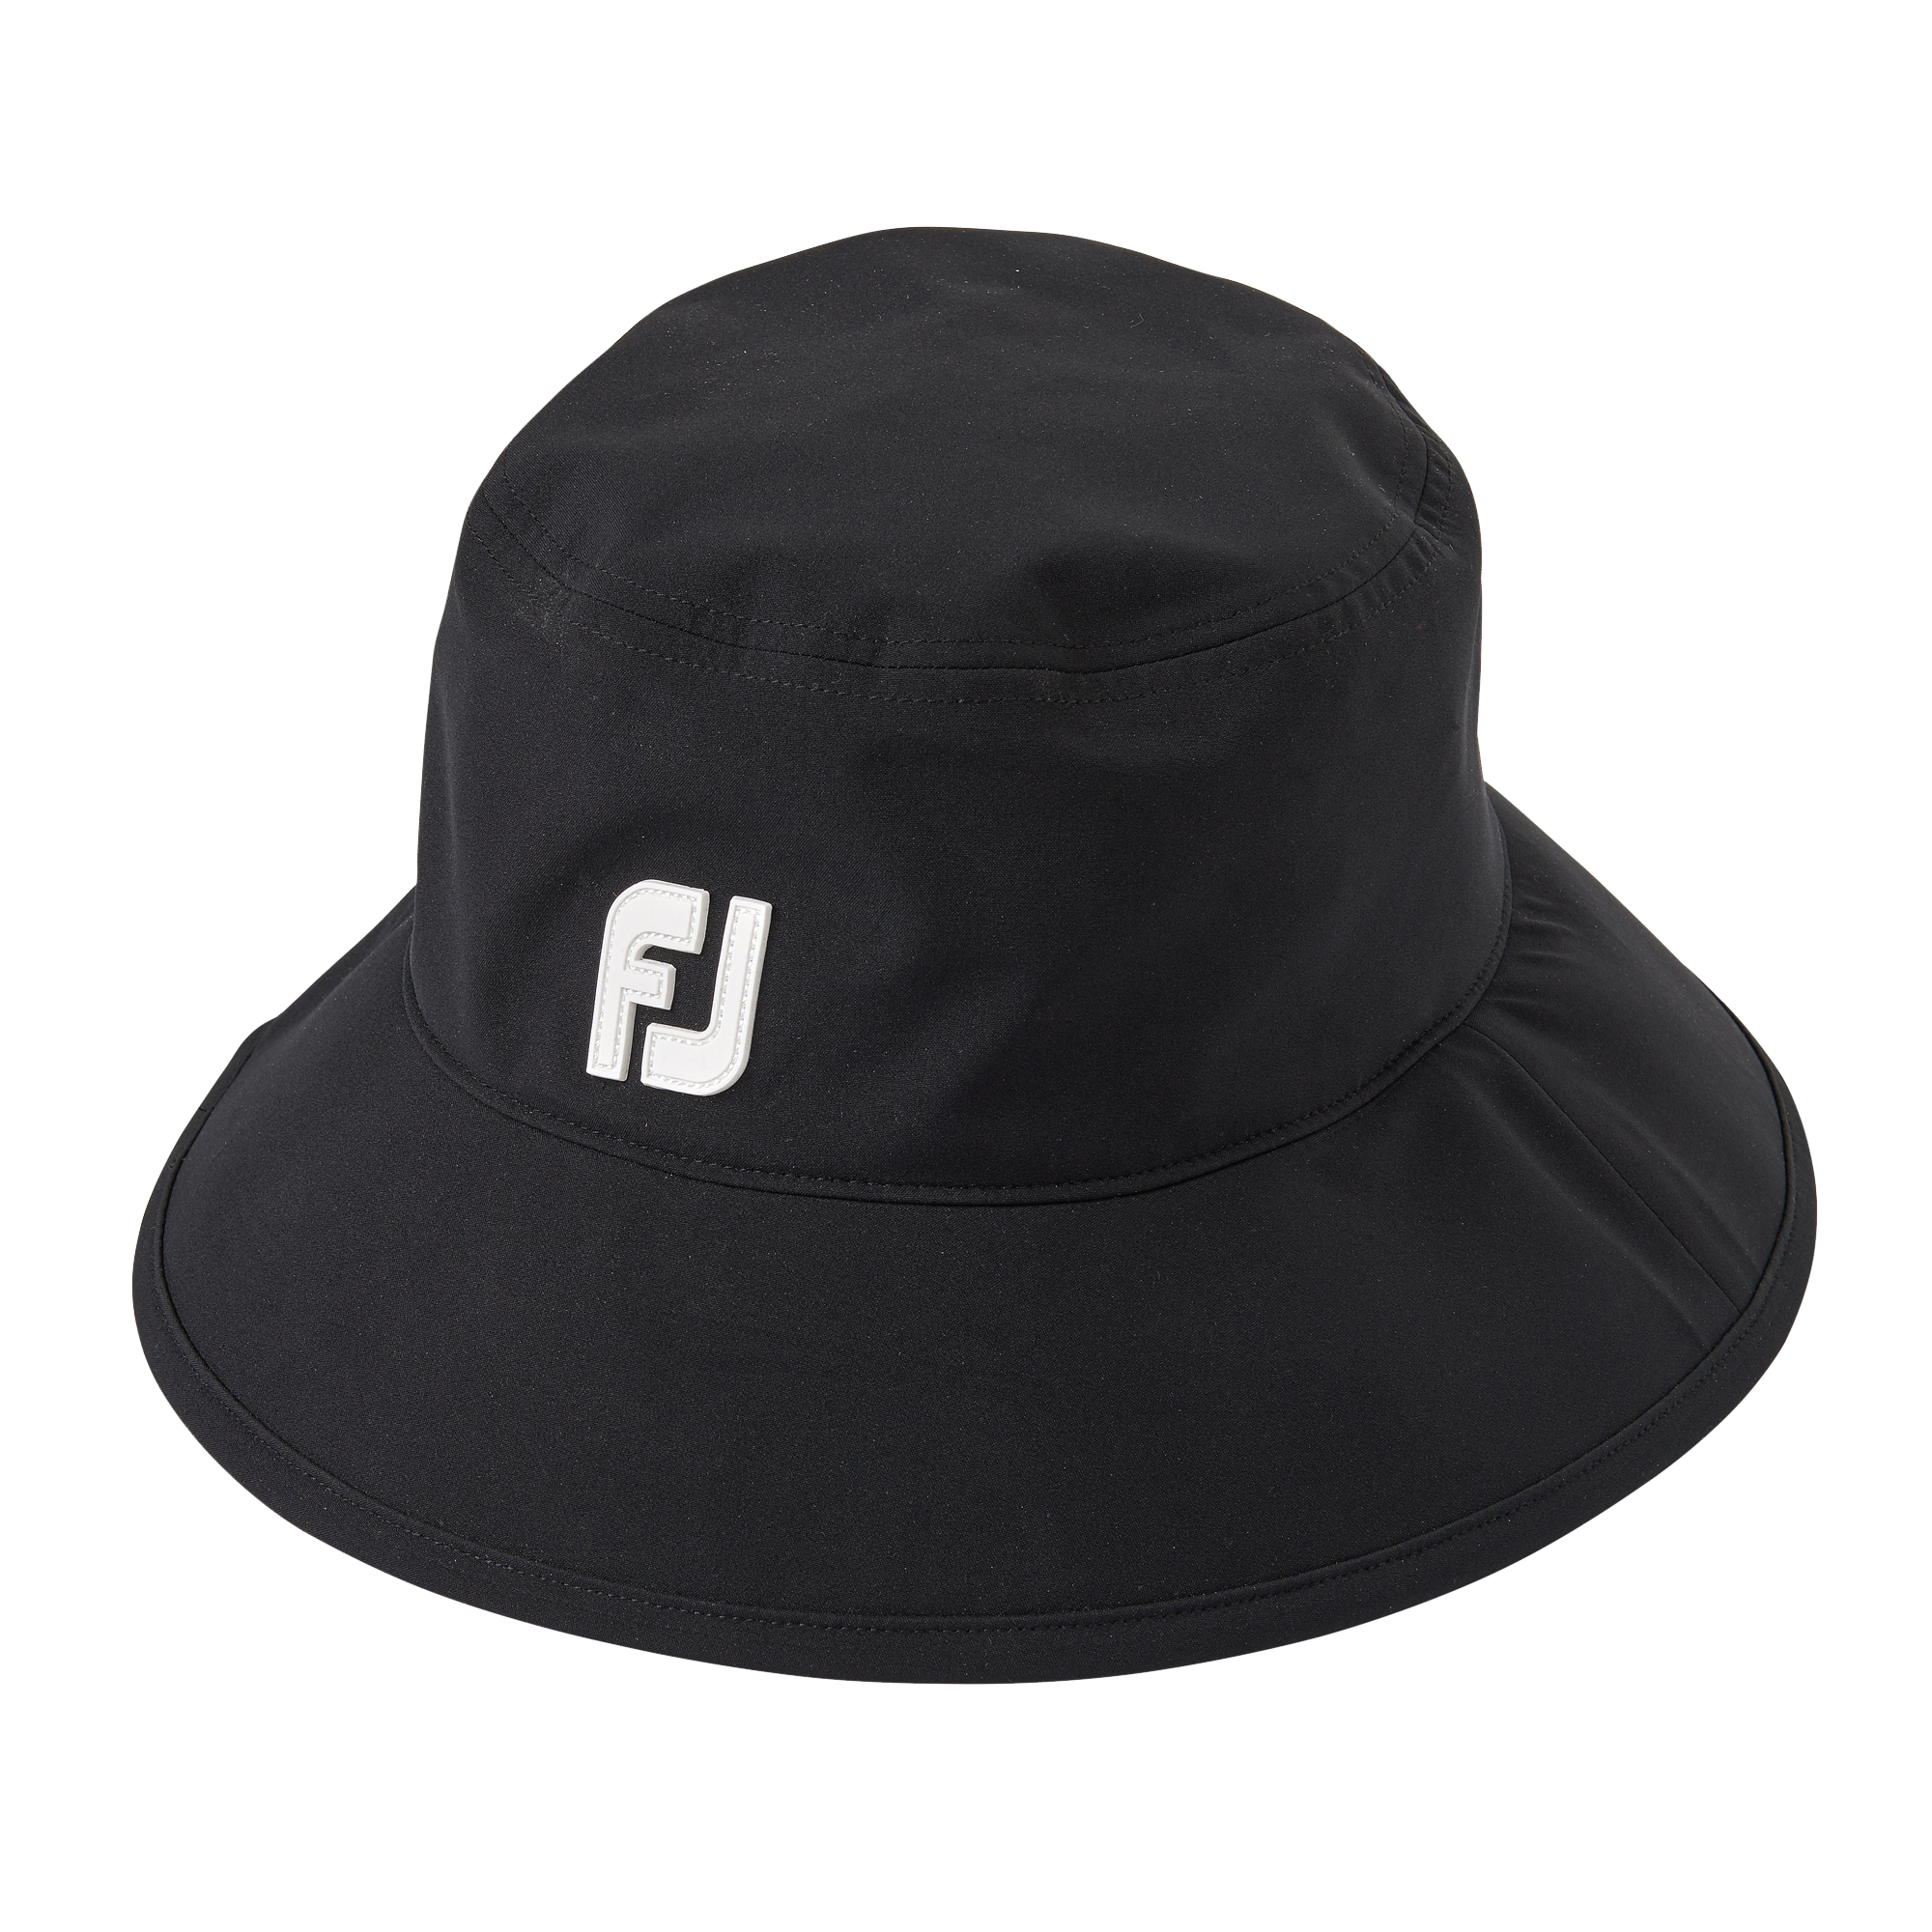 FootJoy DryJoys Tour Bucket Hat - Black - Size: L/XL